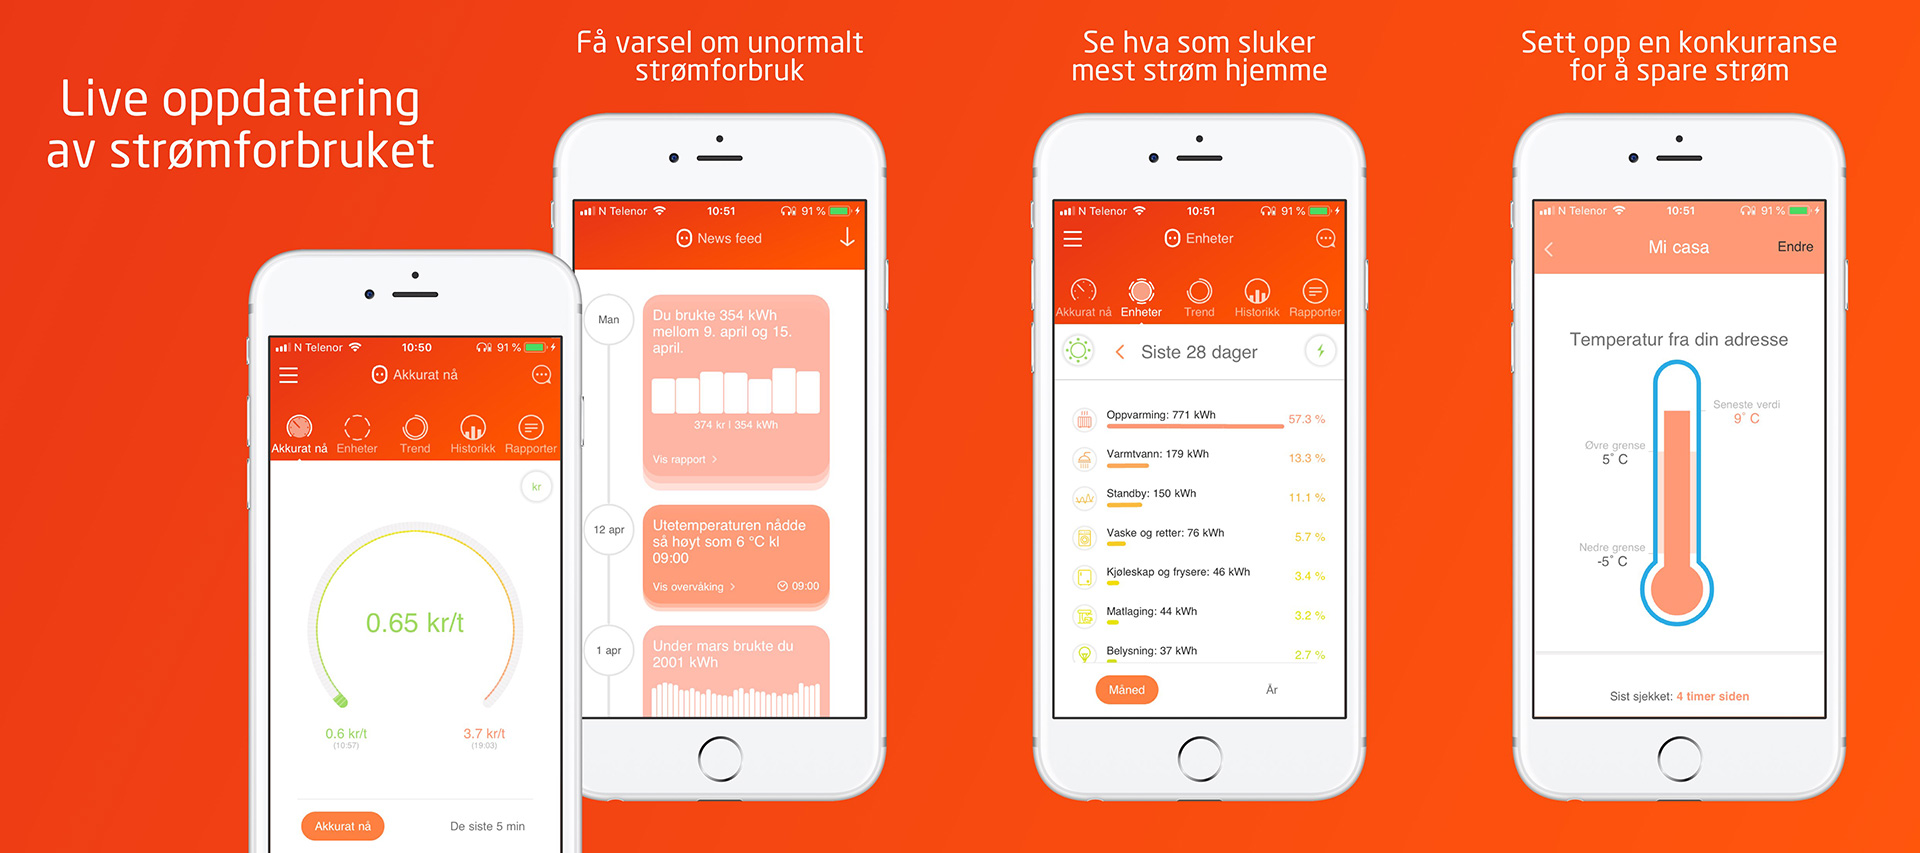 Et skjermbilde av en telefon som forklarer hva som er mulig med Fjordkraft appen